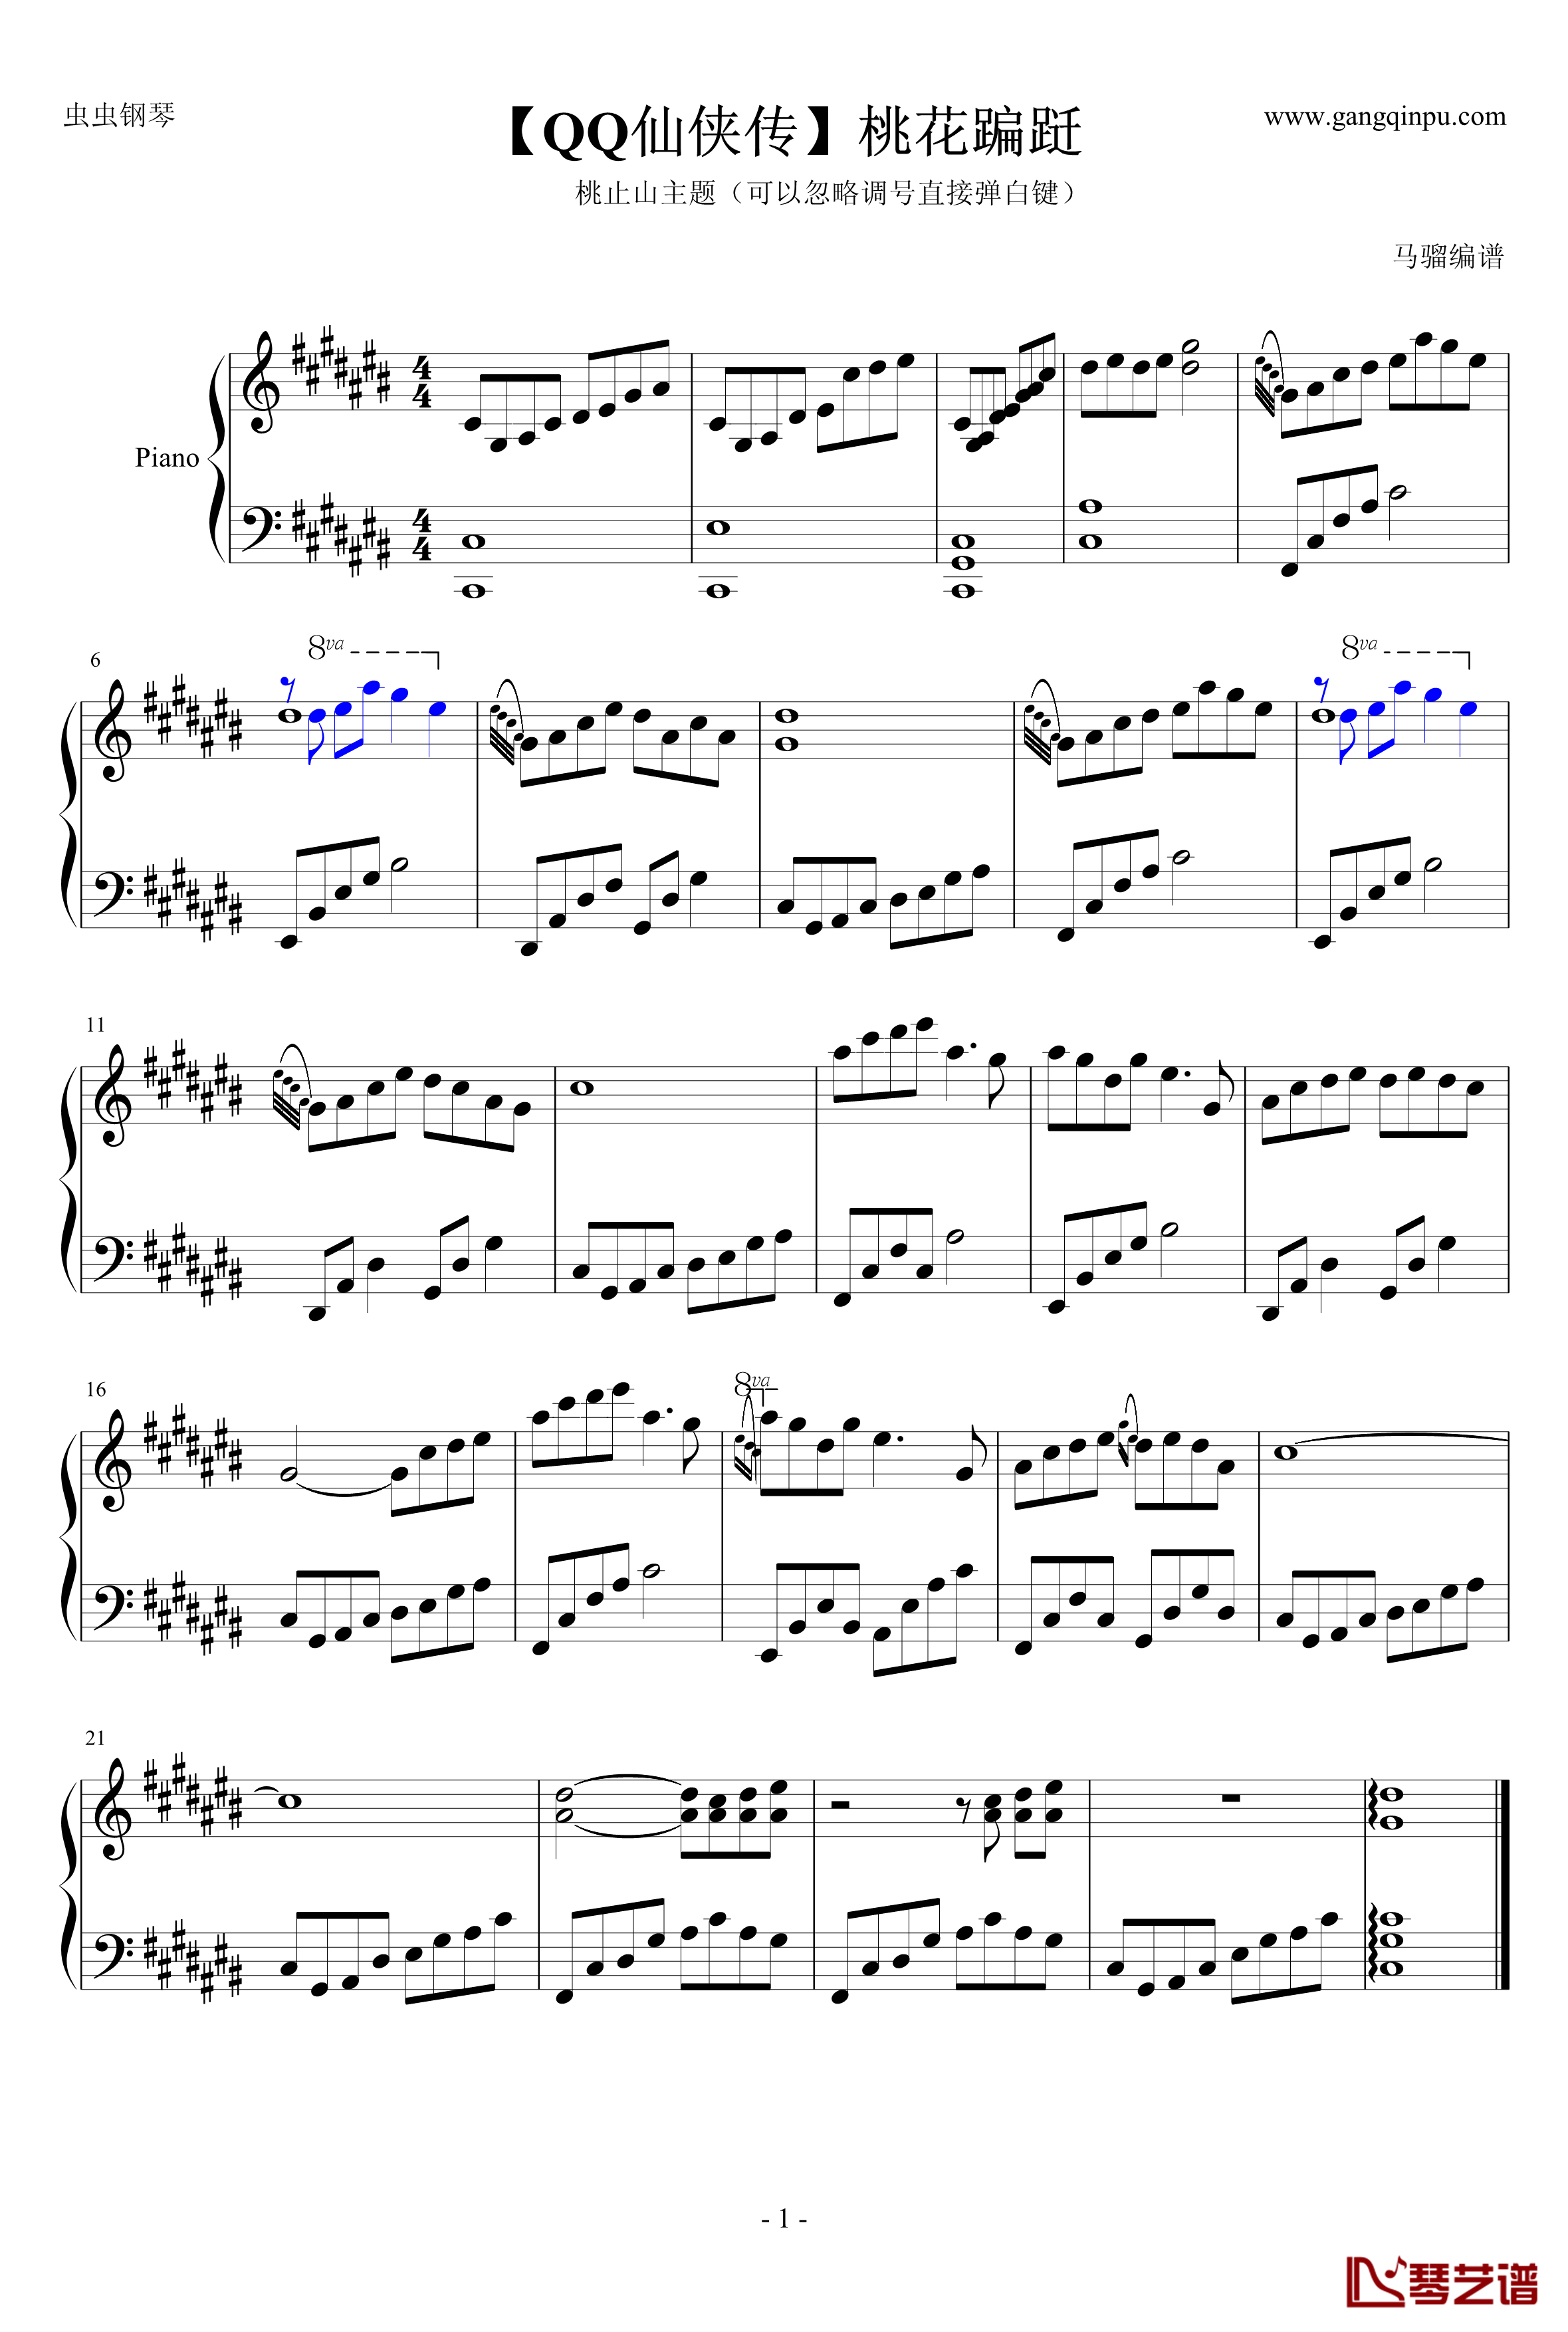 桃花翩跹钢琴谱- 一首很优美的音乐-QQ仙侠传1